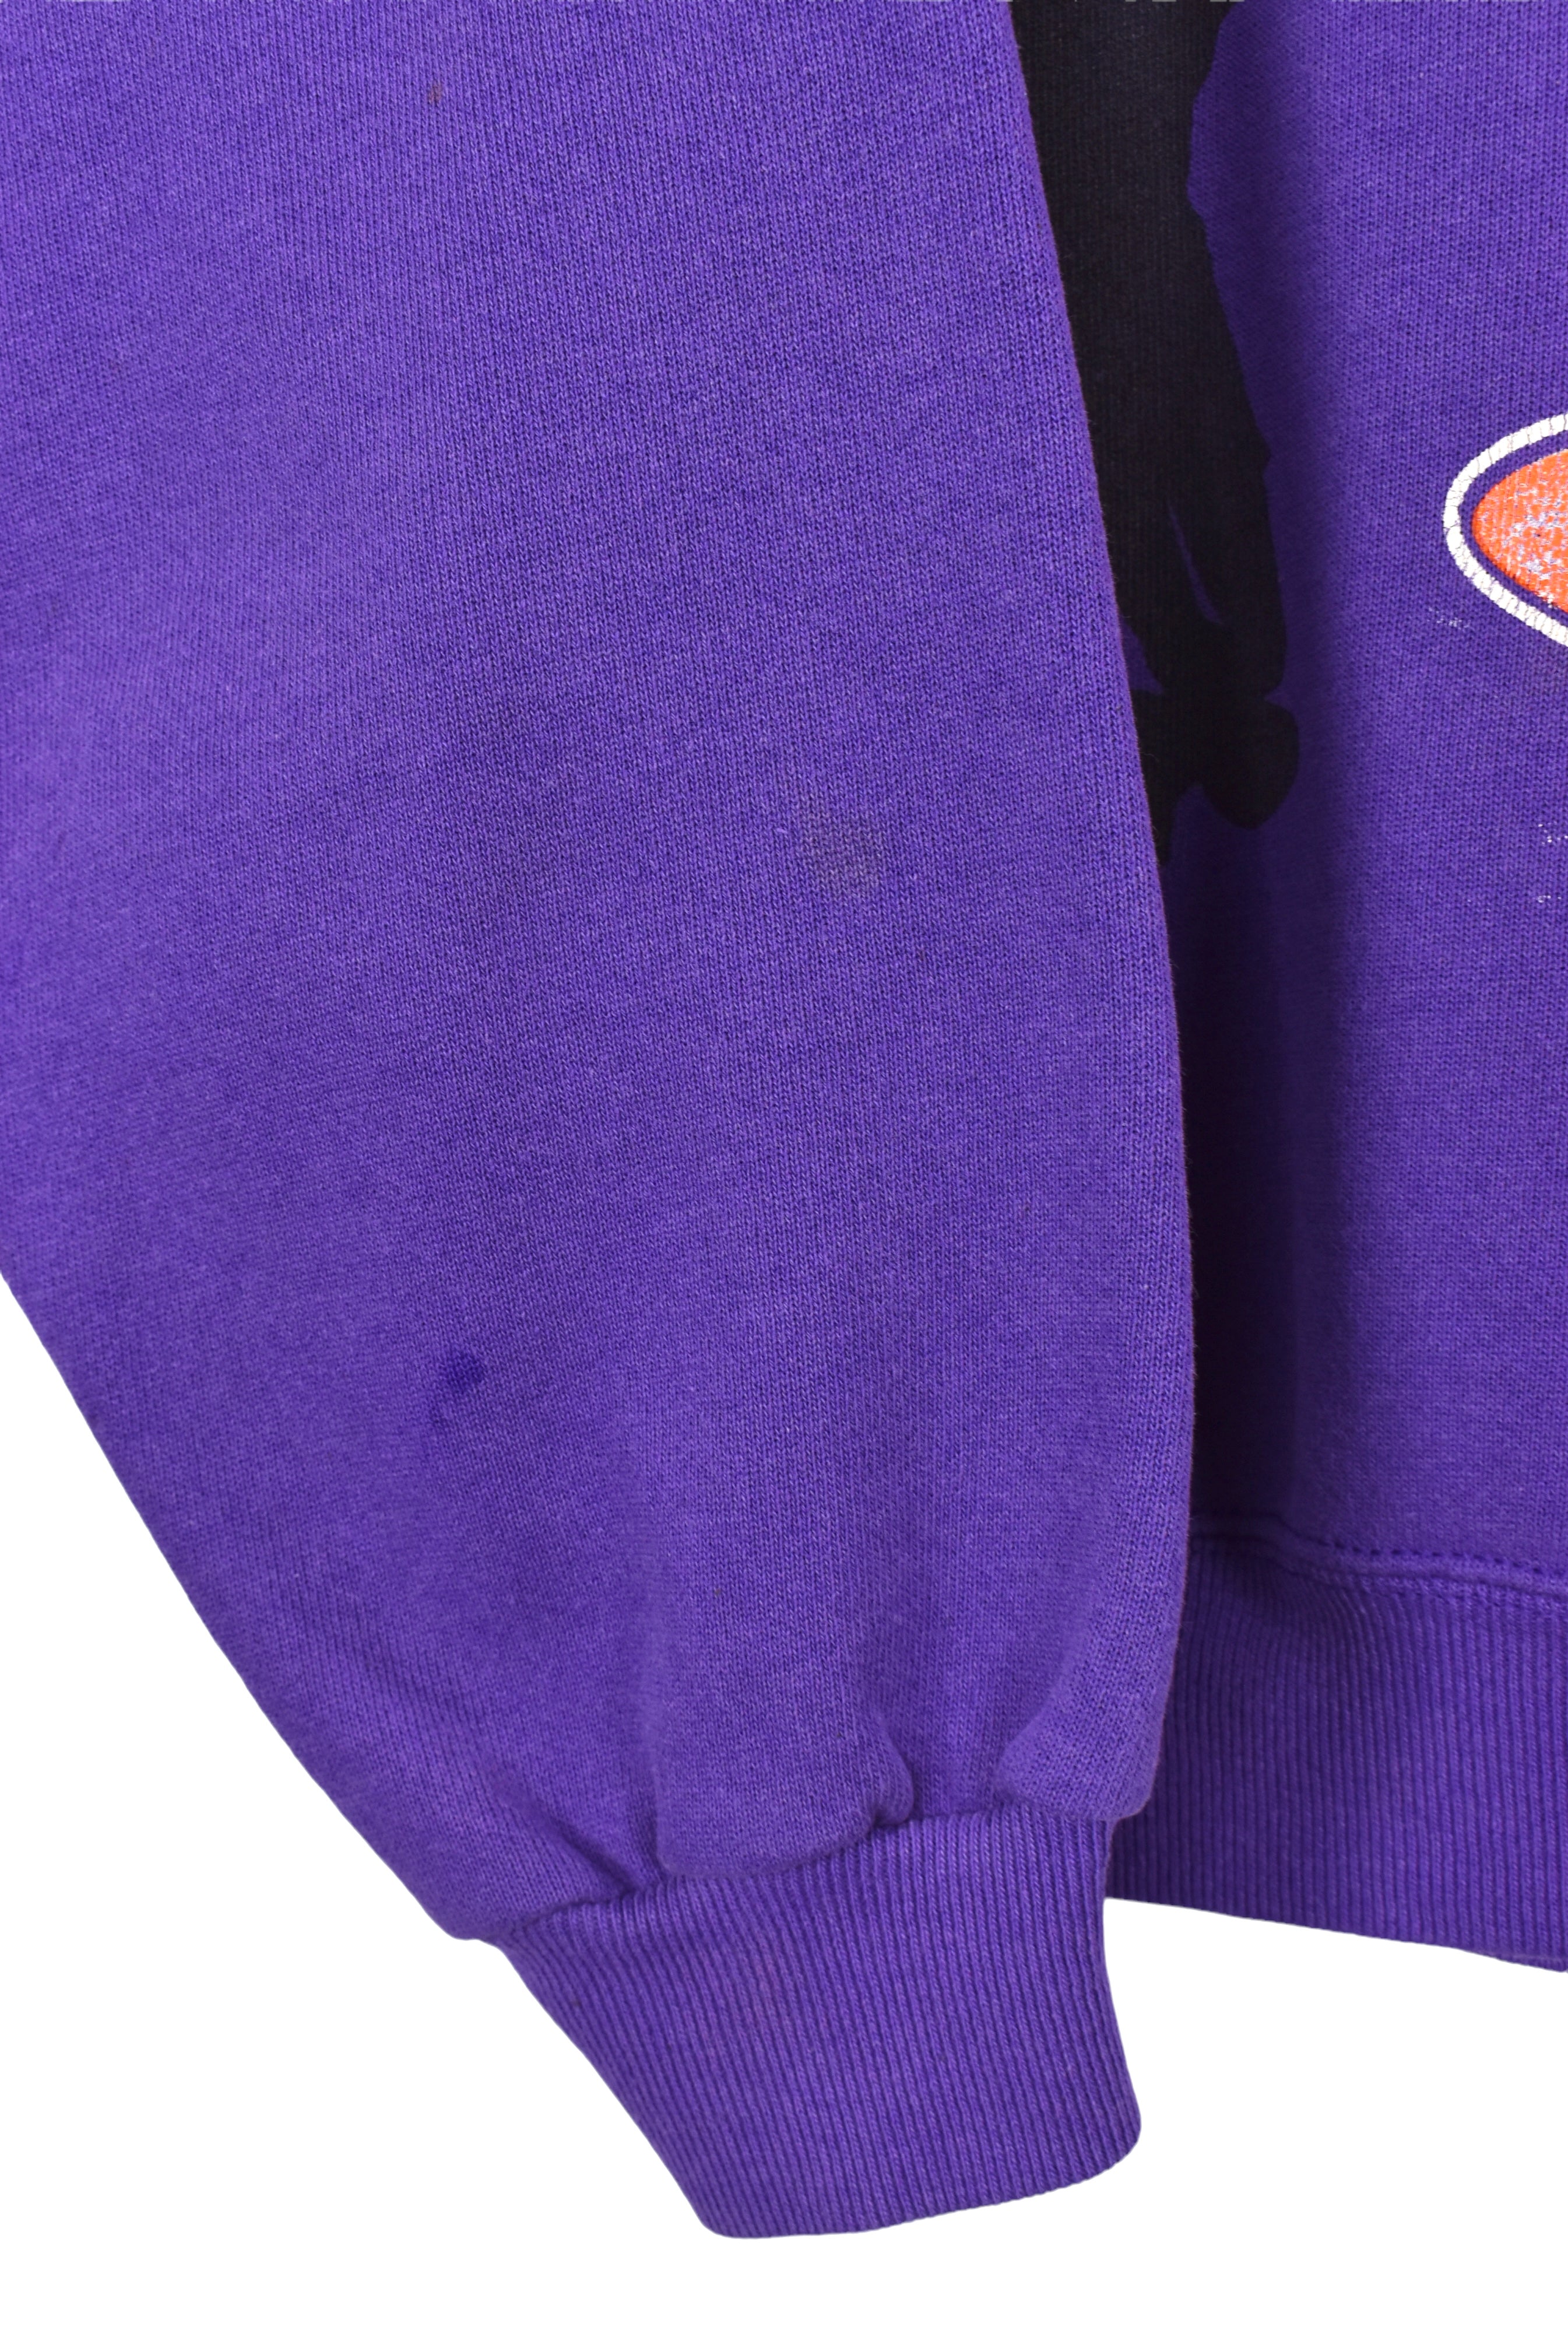 Vintage Phoenix Suns sweatshirt, NBA purple crewneck - Medium